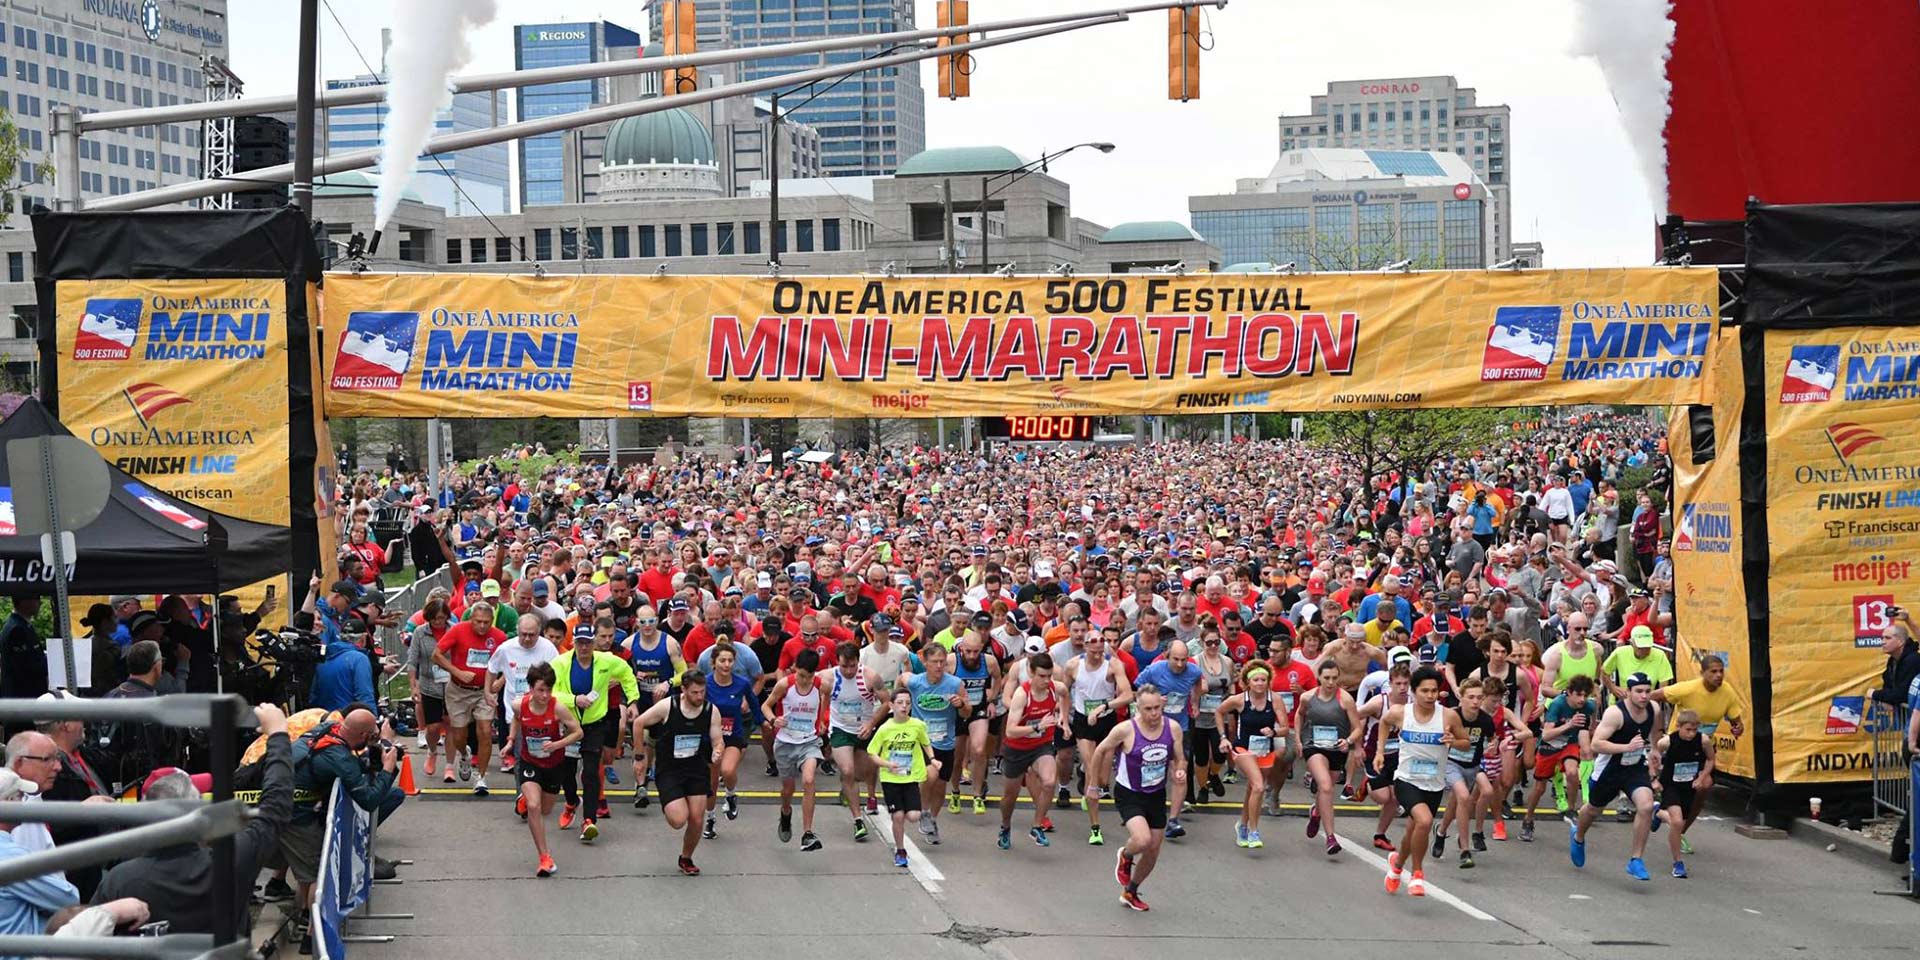 500 Festival Mini Marathon Indianapolis, Indiana Running